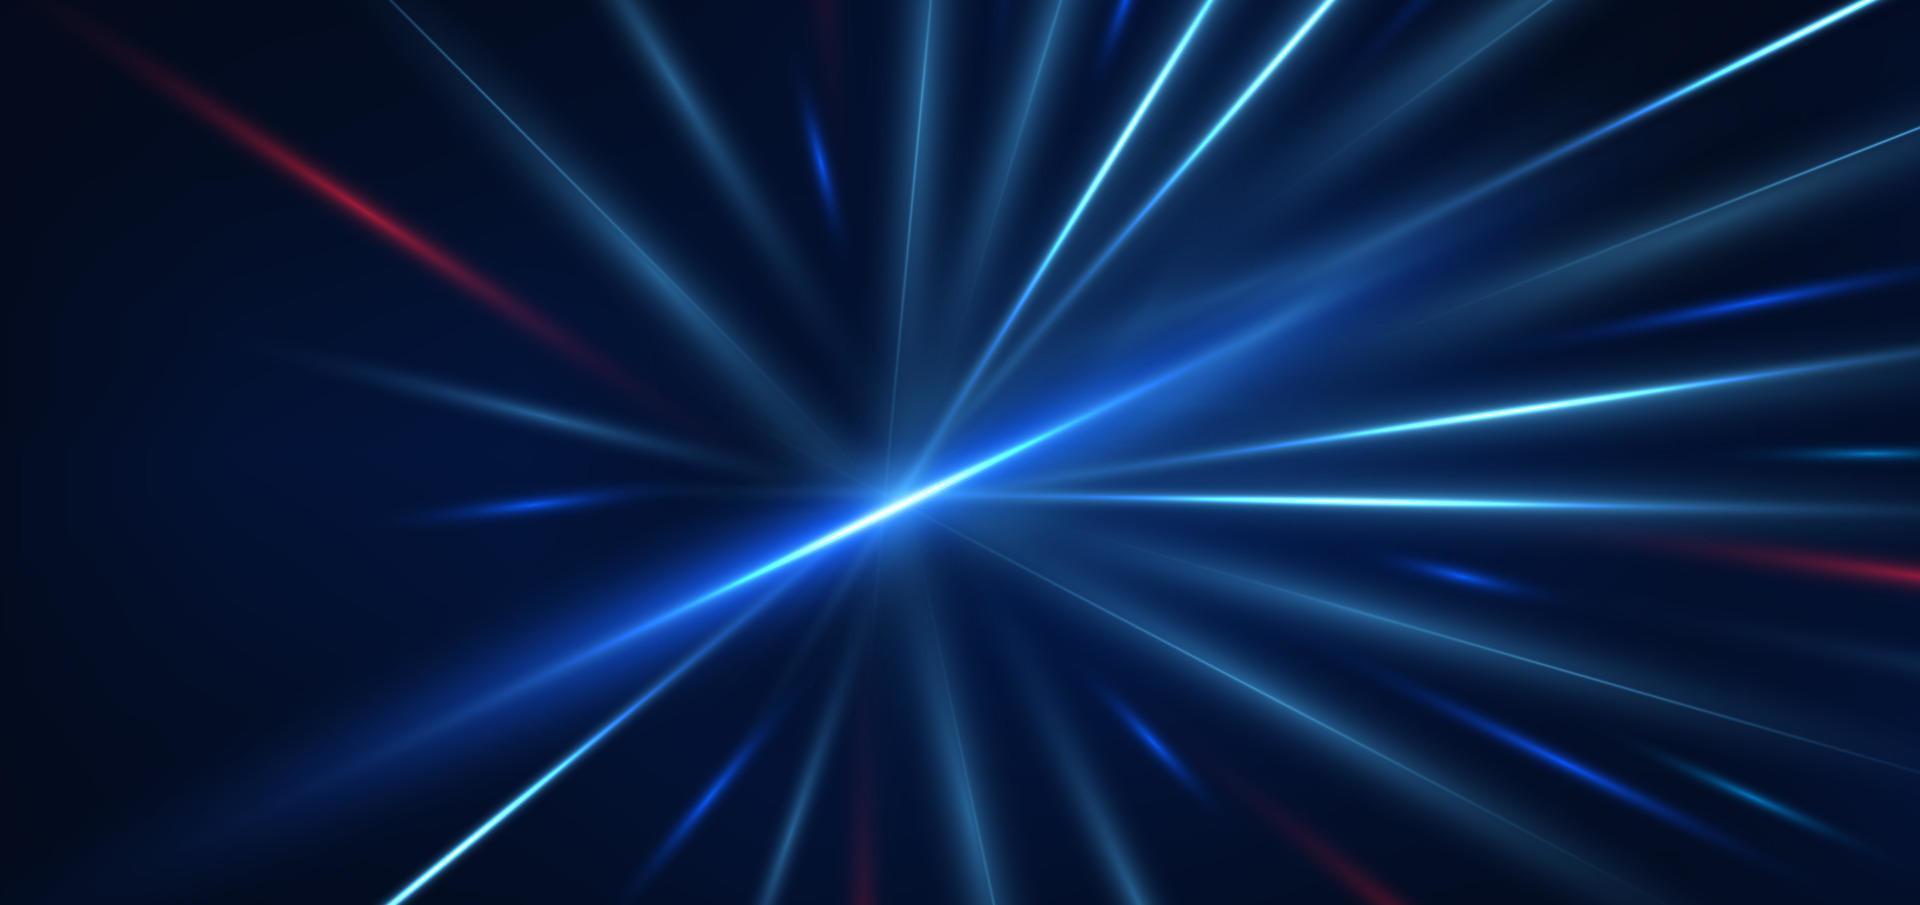 abstrakte technologie futuristisch leuchtende blaue und rote lichtlinien mit geschwindigkeitsbewegungsunschärfeeffekt auf dunkelblauem hintergrund. vektor